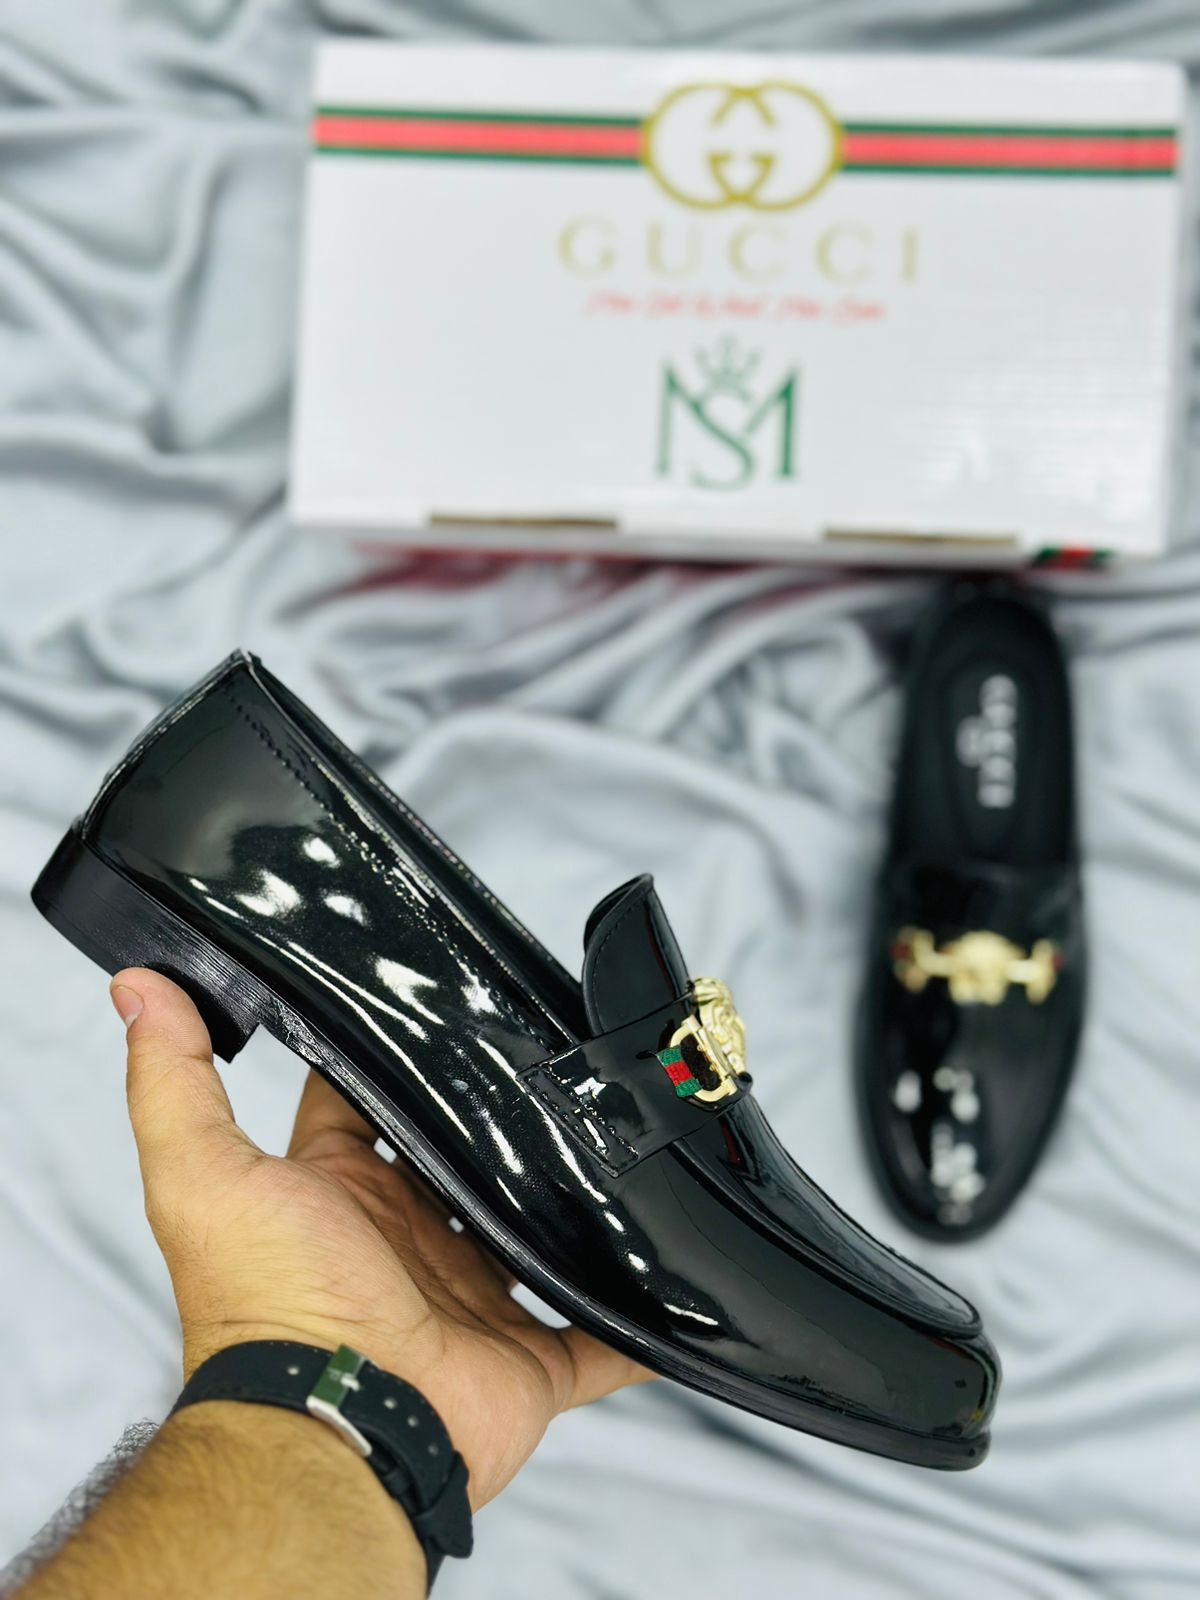 formal shoes for men brands